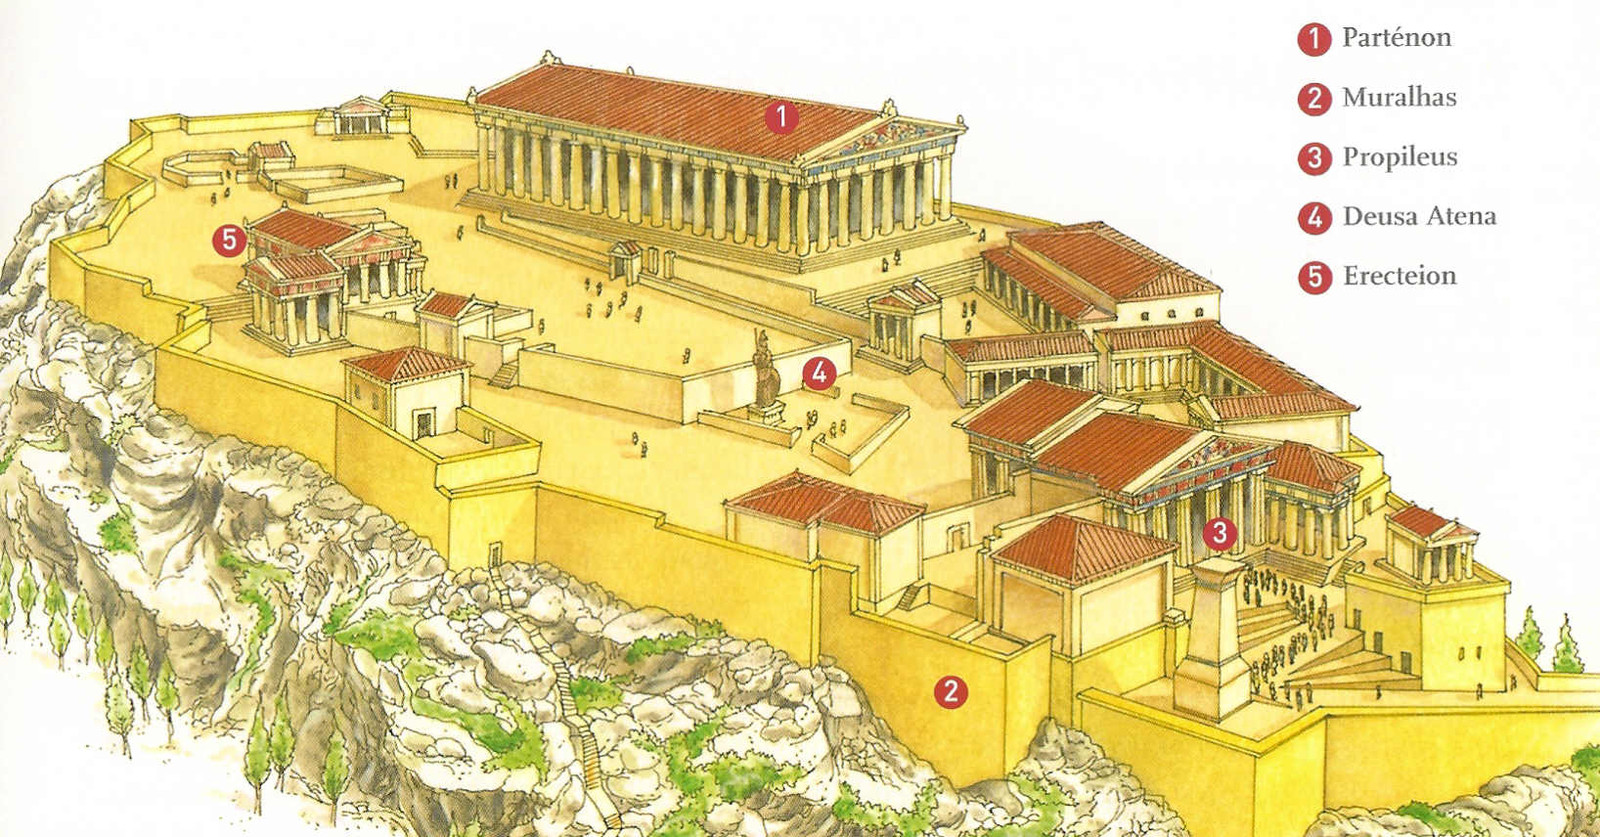 Acrópole de Atenas: reconstituição